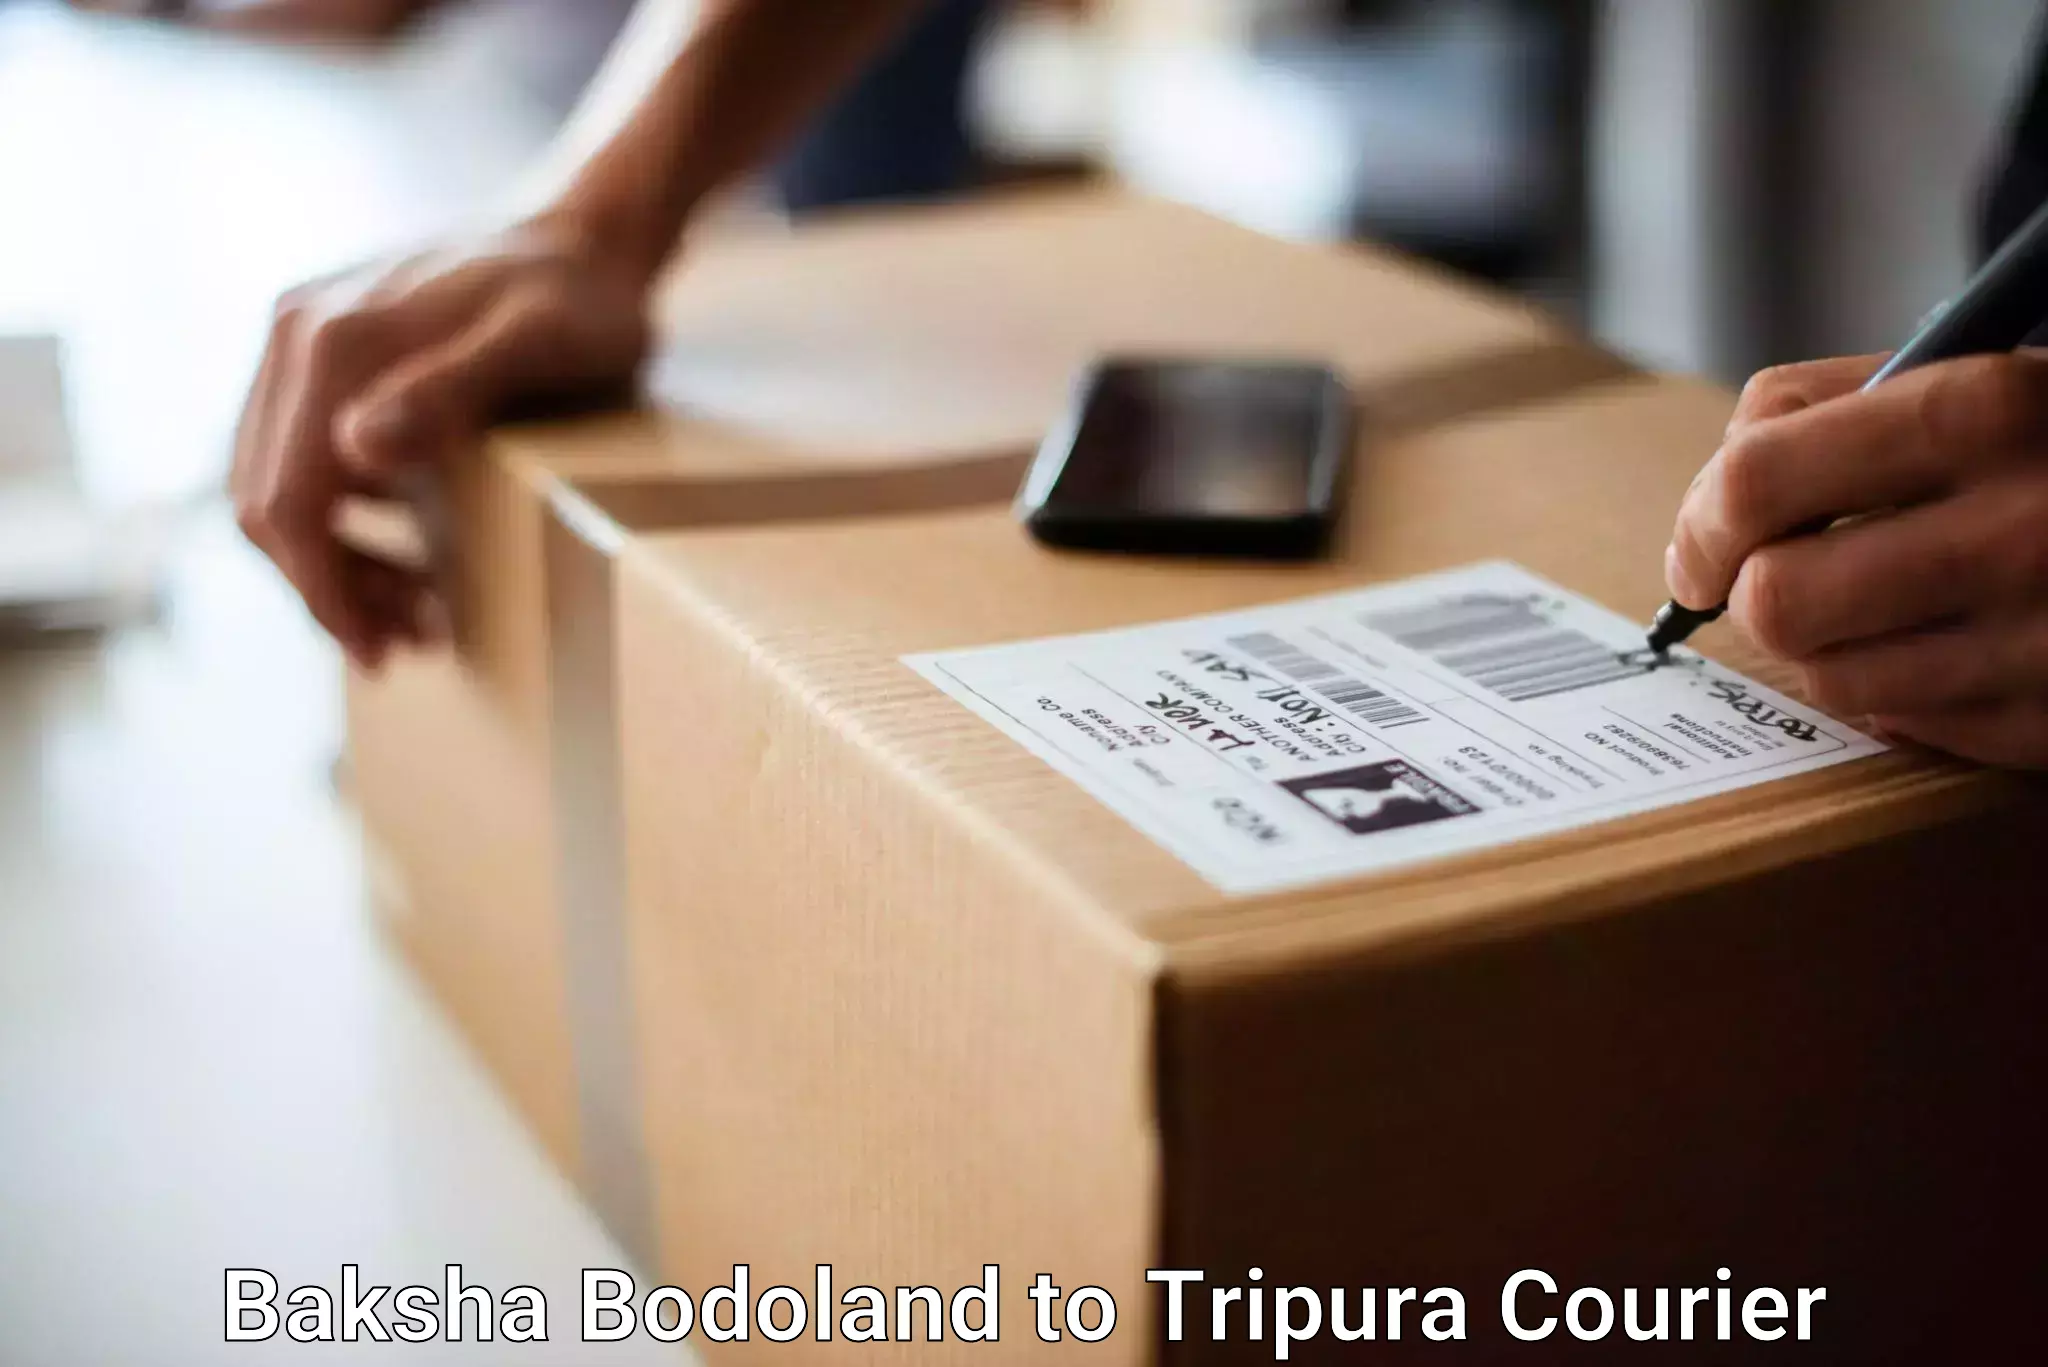 Immediate baggage courier Baksha Bodoland to Manughat